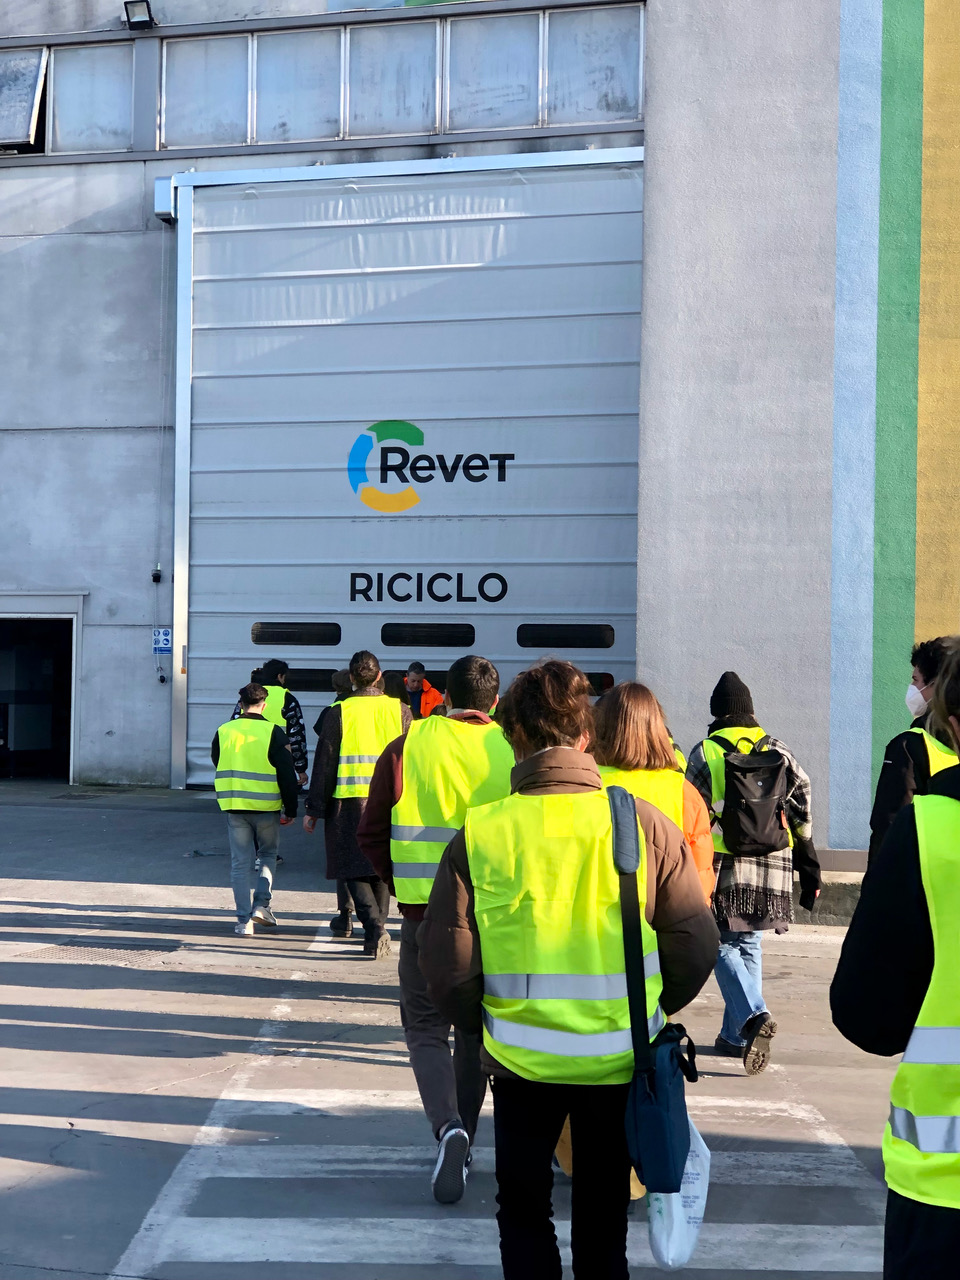 Foto scattata durante la visita all'azienda "Revet", 2° corso, a.a. 2021/2022.